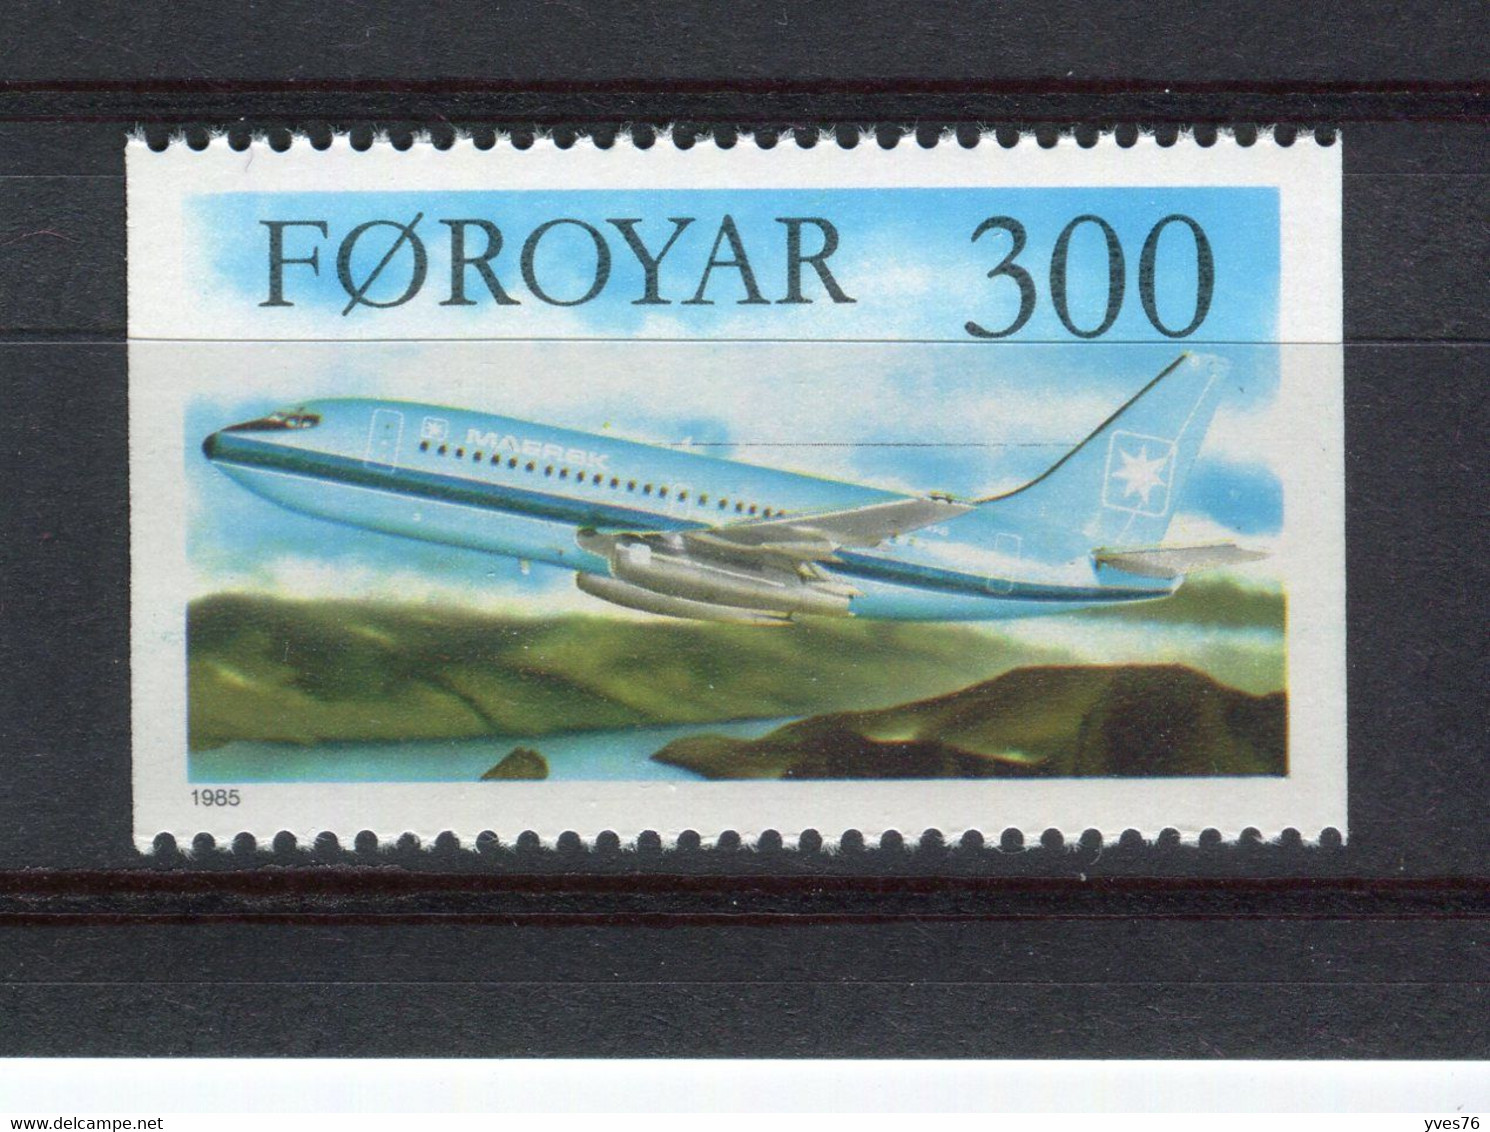 ILES FEROE - Y&T N° 121** - MNH - Avion - Boeing 737 - Faroe Islands